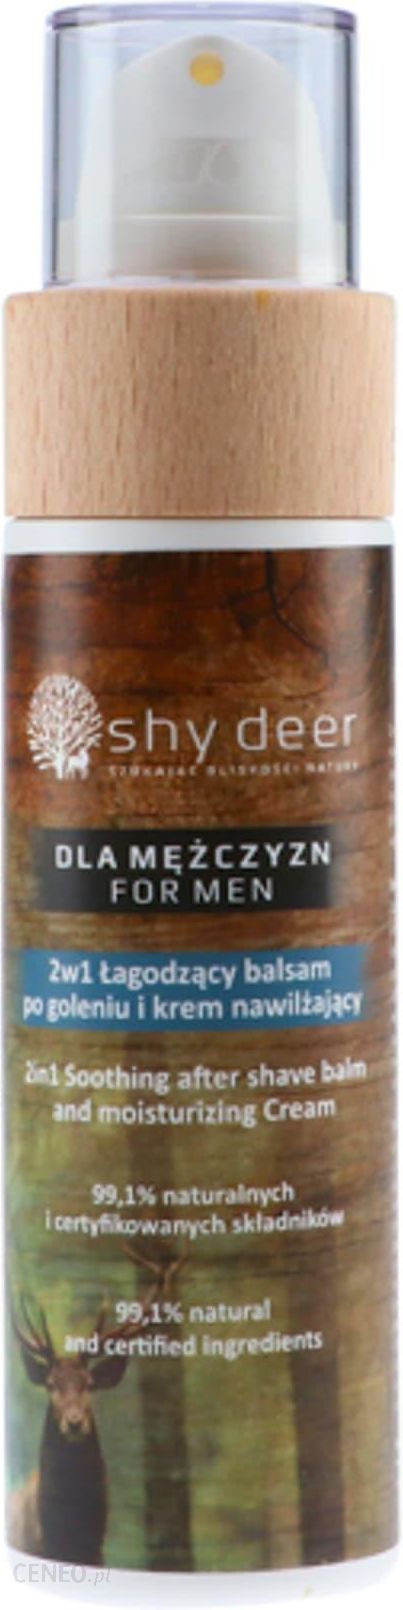 Shy Deer 2in1 Soothing After Shave Balm Moisturizing Cream Balsam po goleniu i krem nawilżający 2w1 100 ml